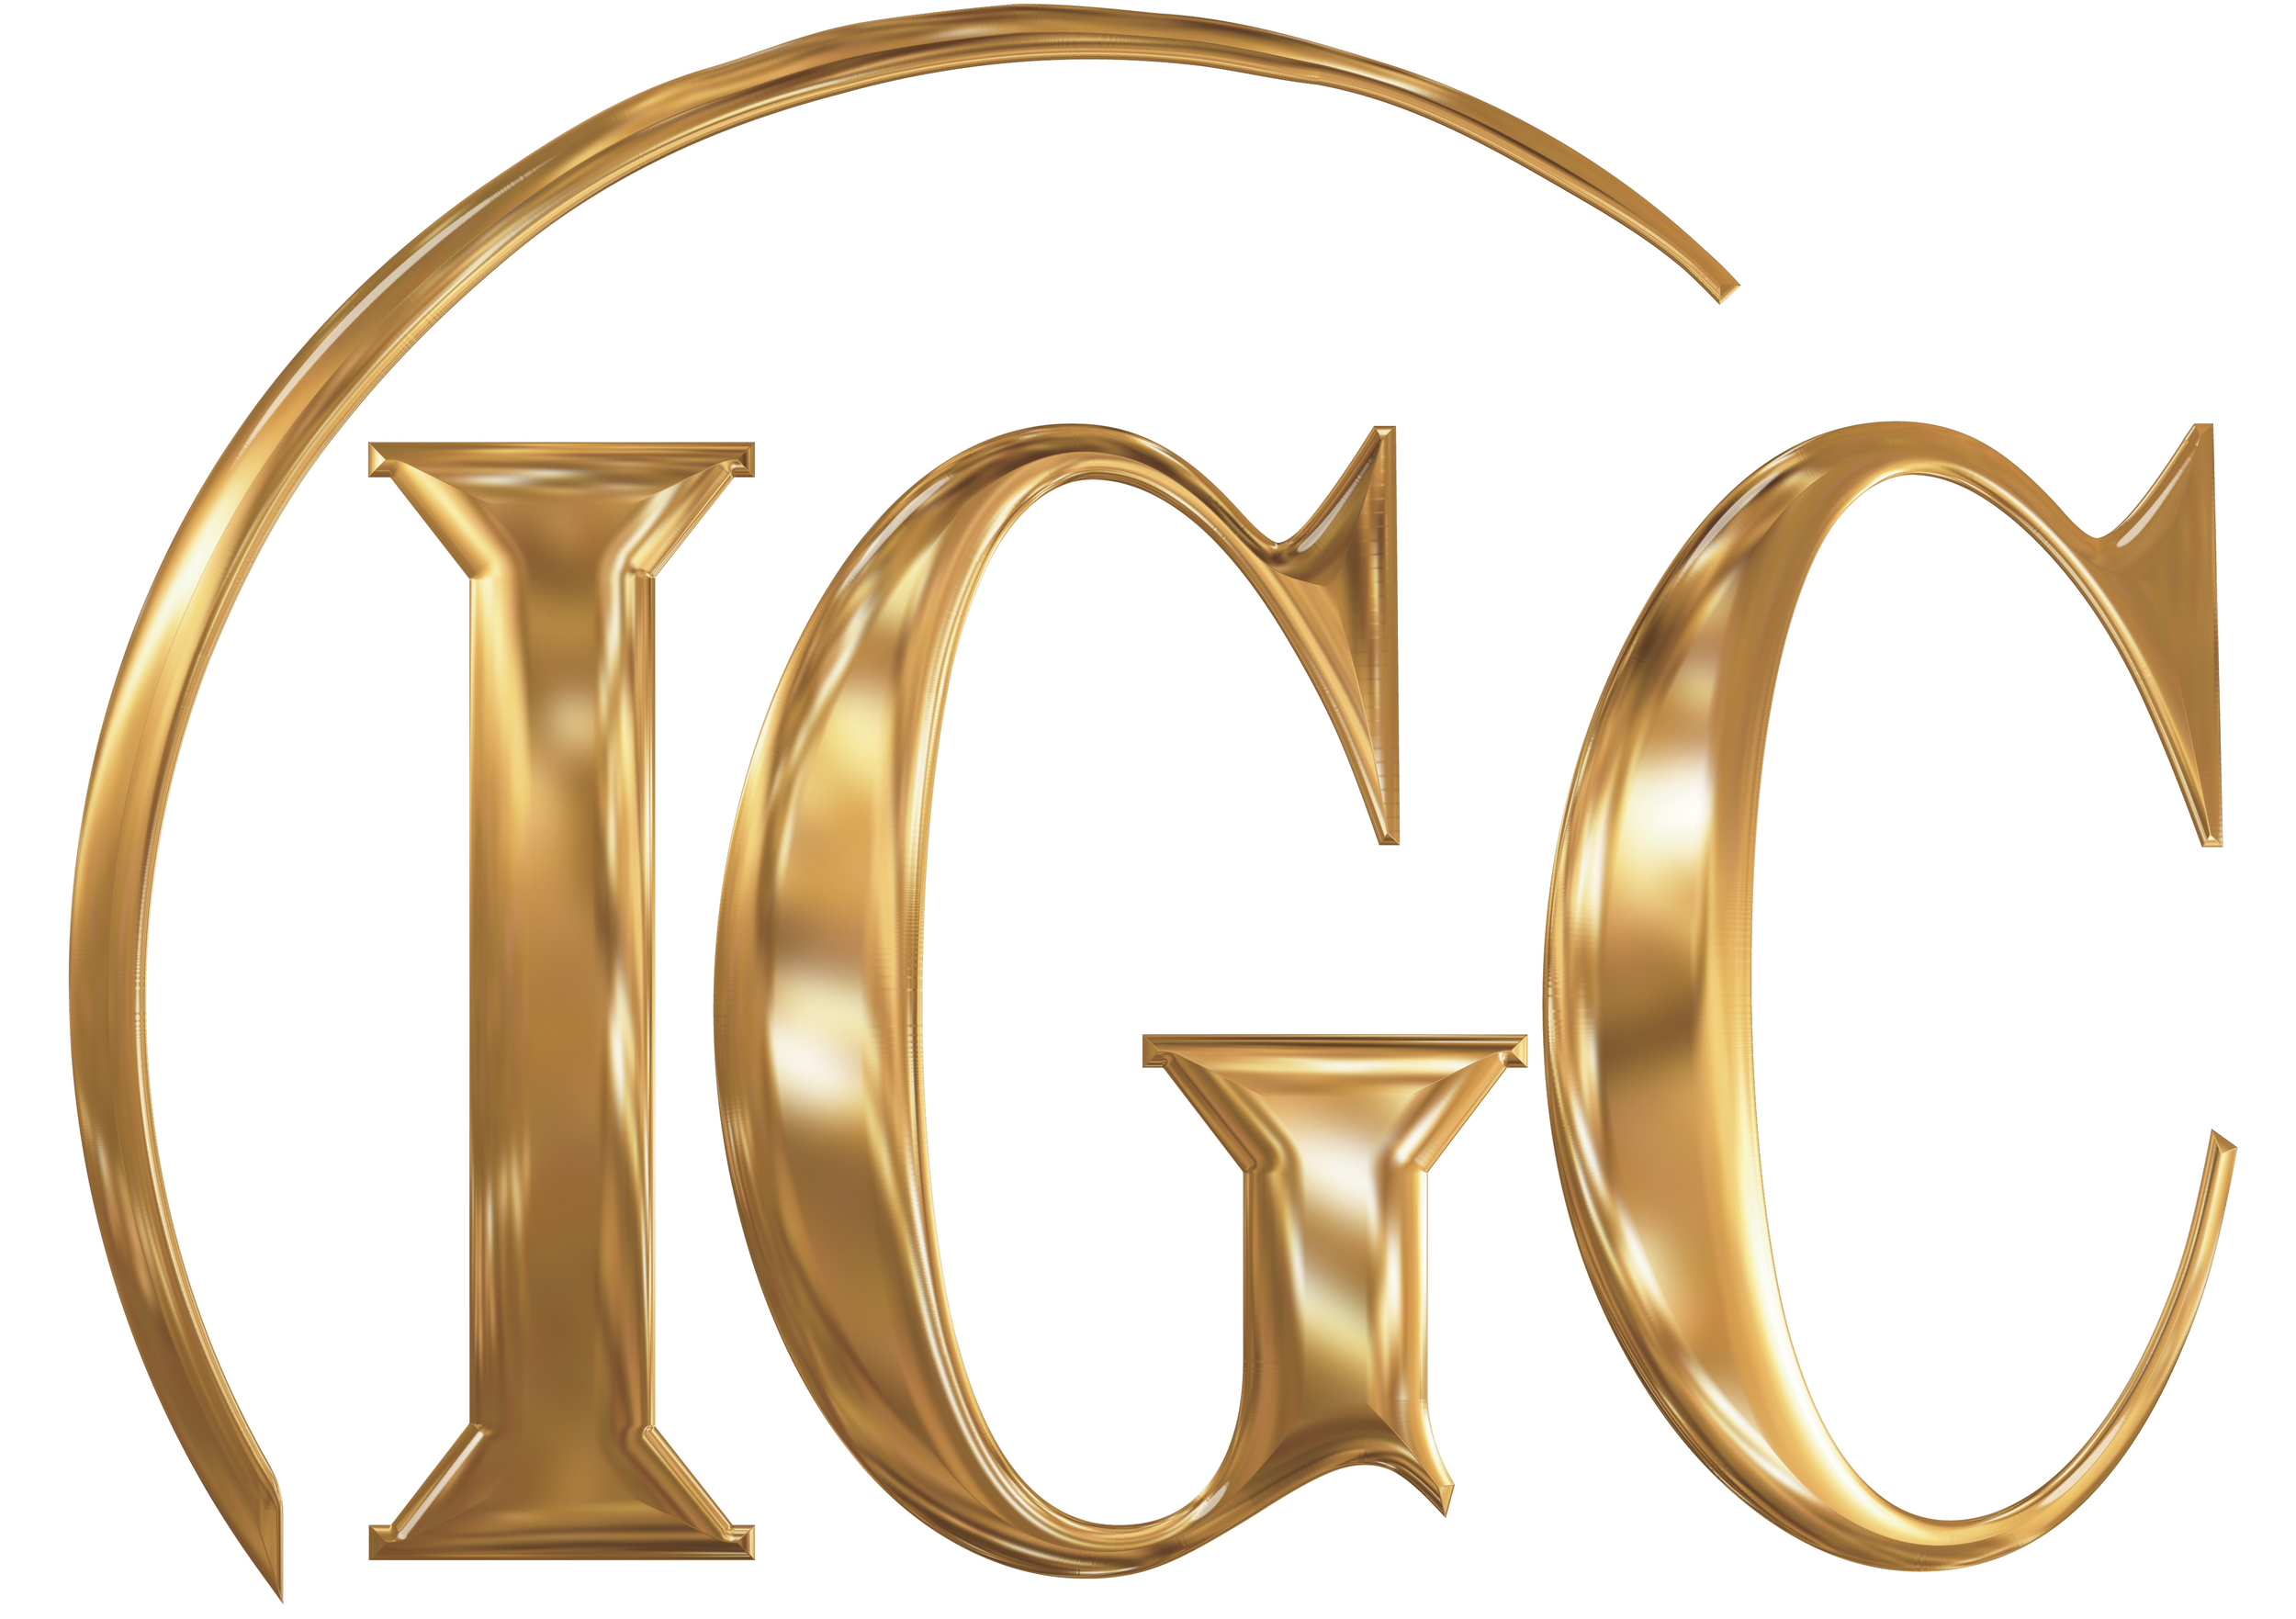 IGCEast_Gold2014_brighter.jpg